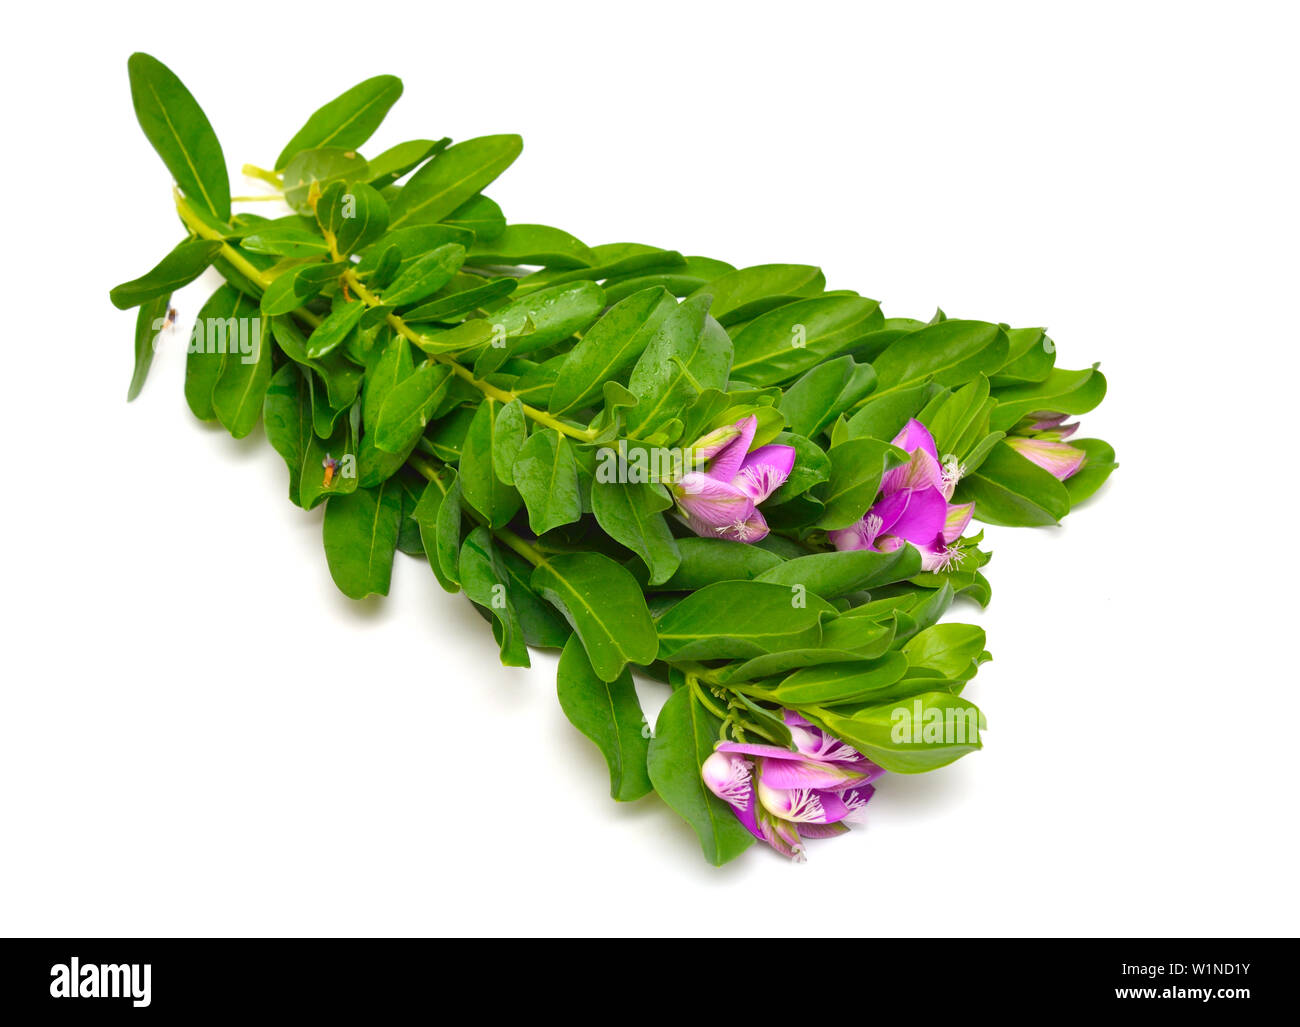 Polygala myrtifolia or myrtle-leaf milkwort isolated on white background. Stock Photo